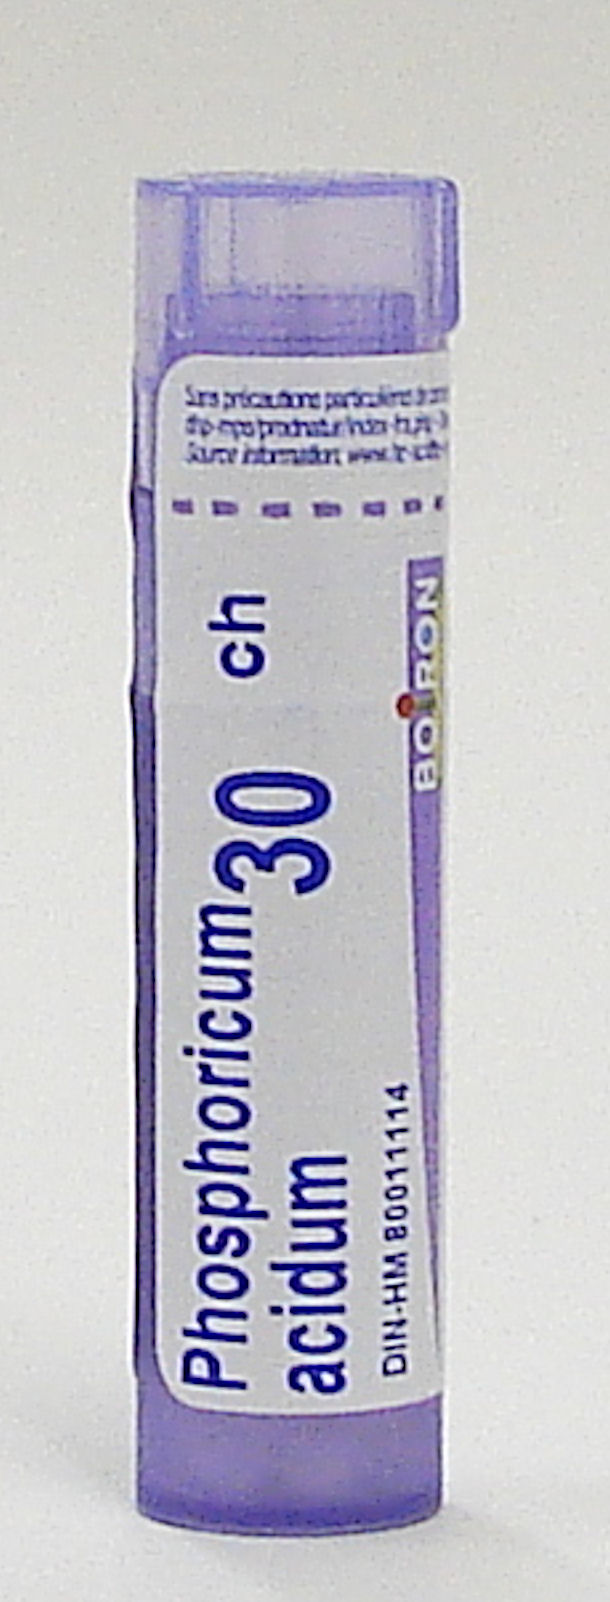 Phosphoricum Acidum 30ch sublingual pellets (Boiron)